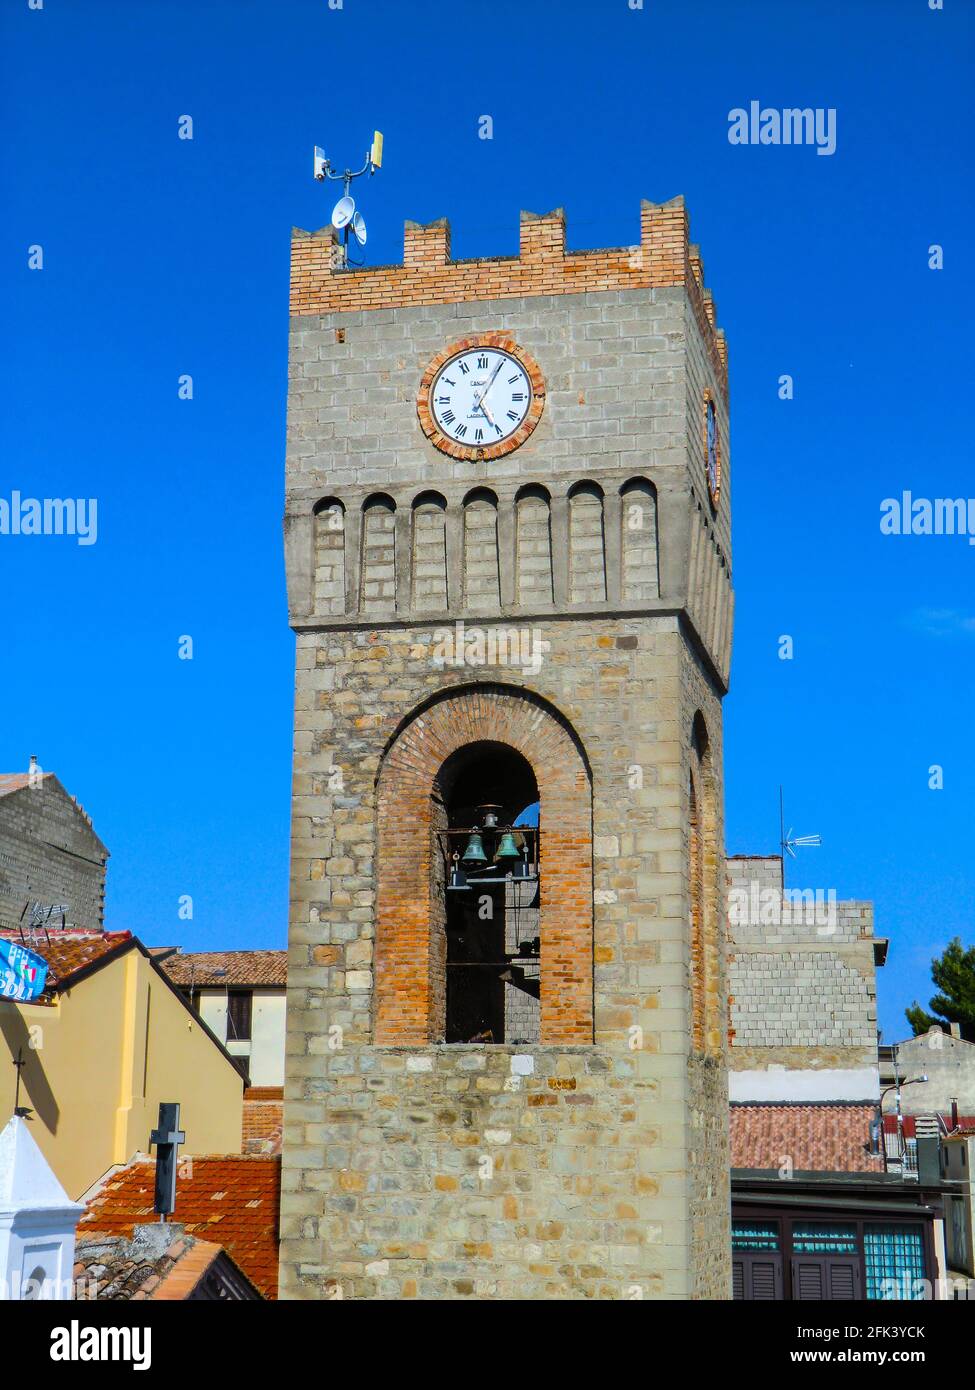 Chiesa di San Luigi Gonzaga con torre dell'orologio, Chiesa di San Luigi Gonzaga, frazione di Aliano, frazione di Matera, Basilicata, Italia, Europa Foto Stock